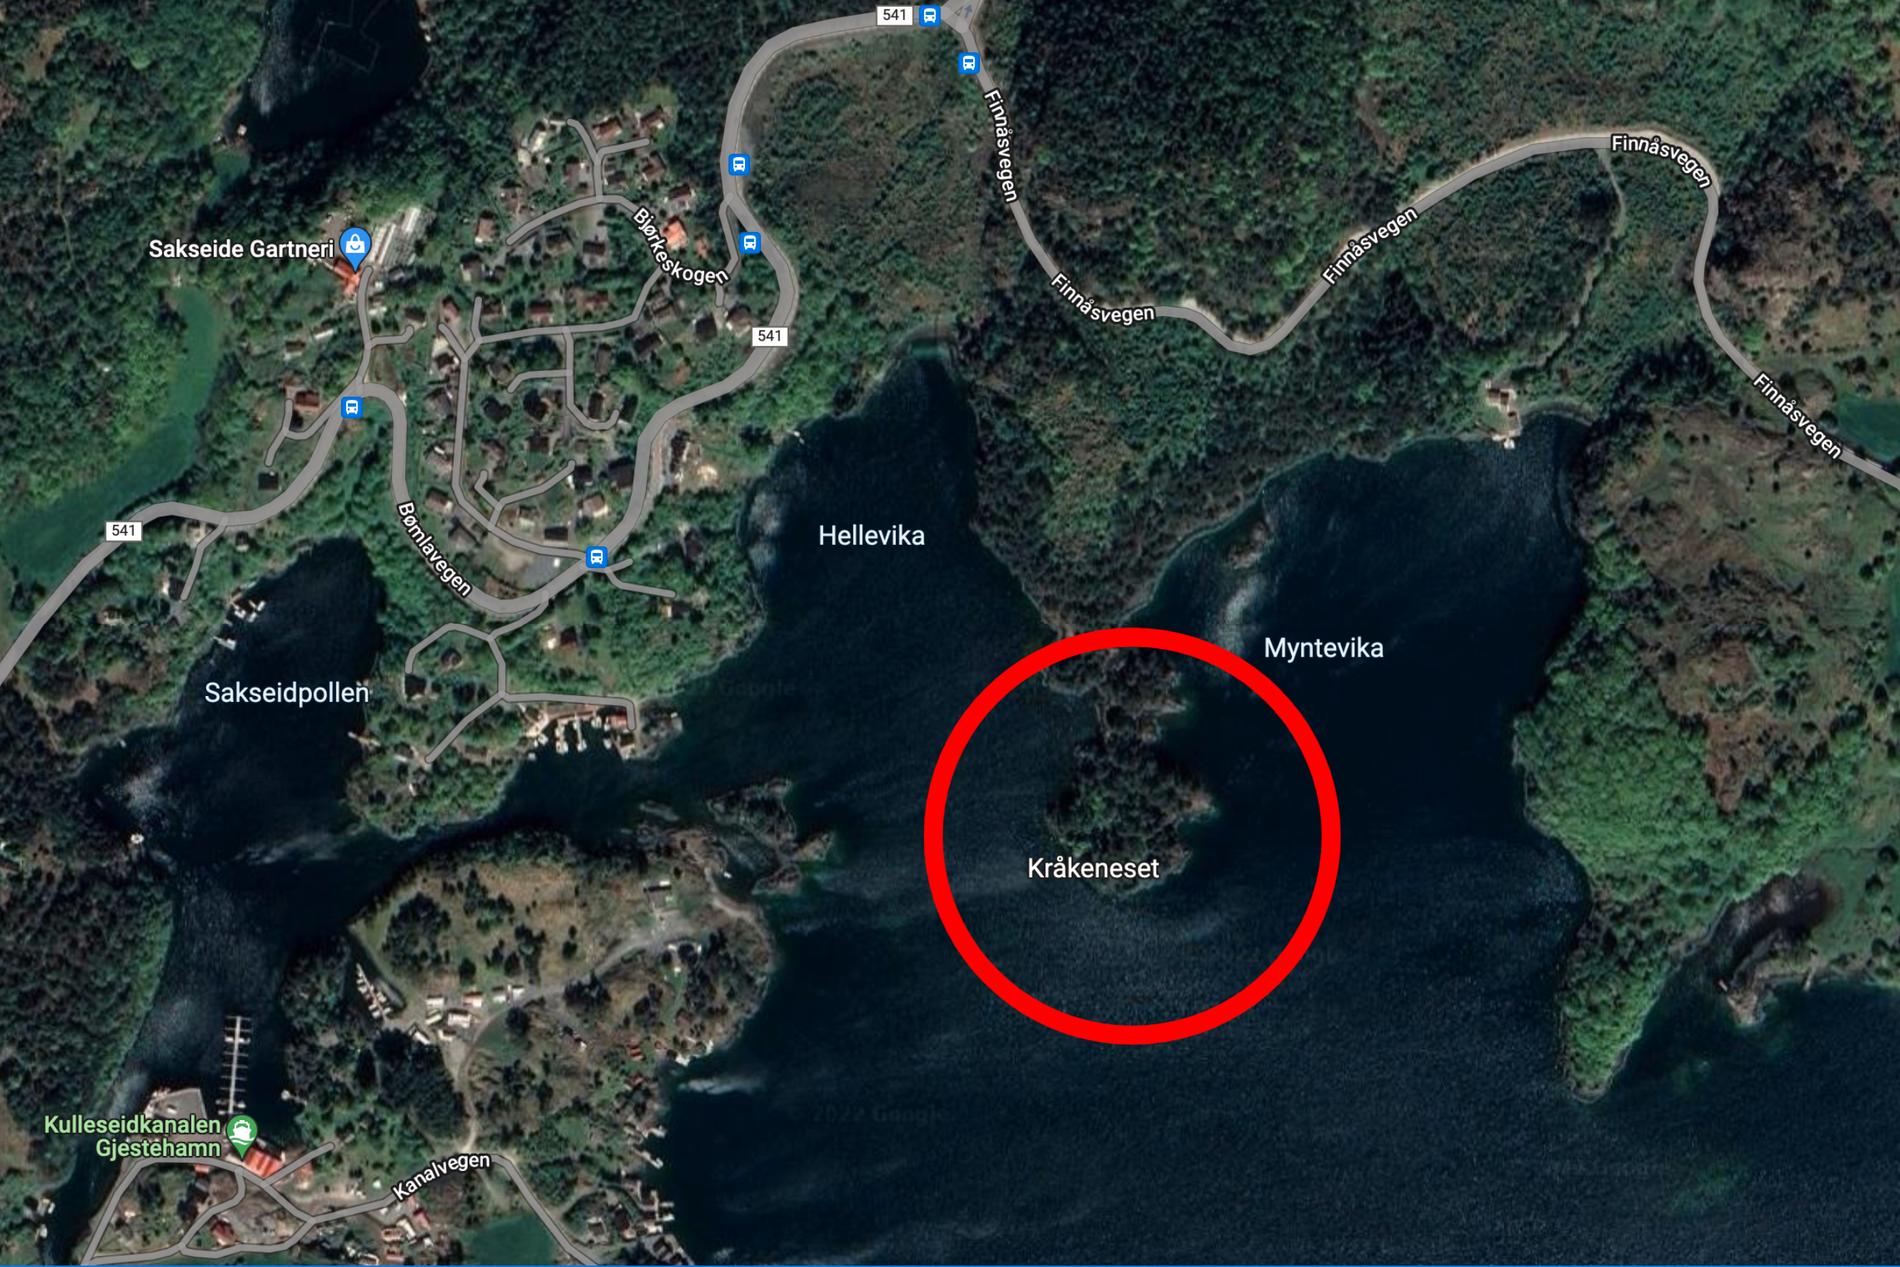 Bømlo - VG Boy (12) dies in boat accident